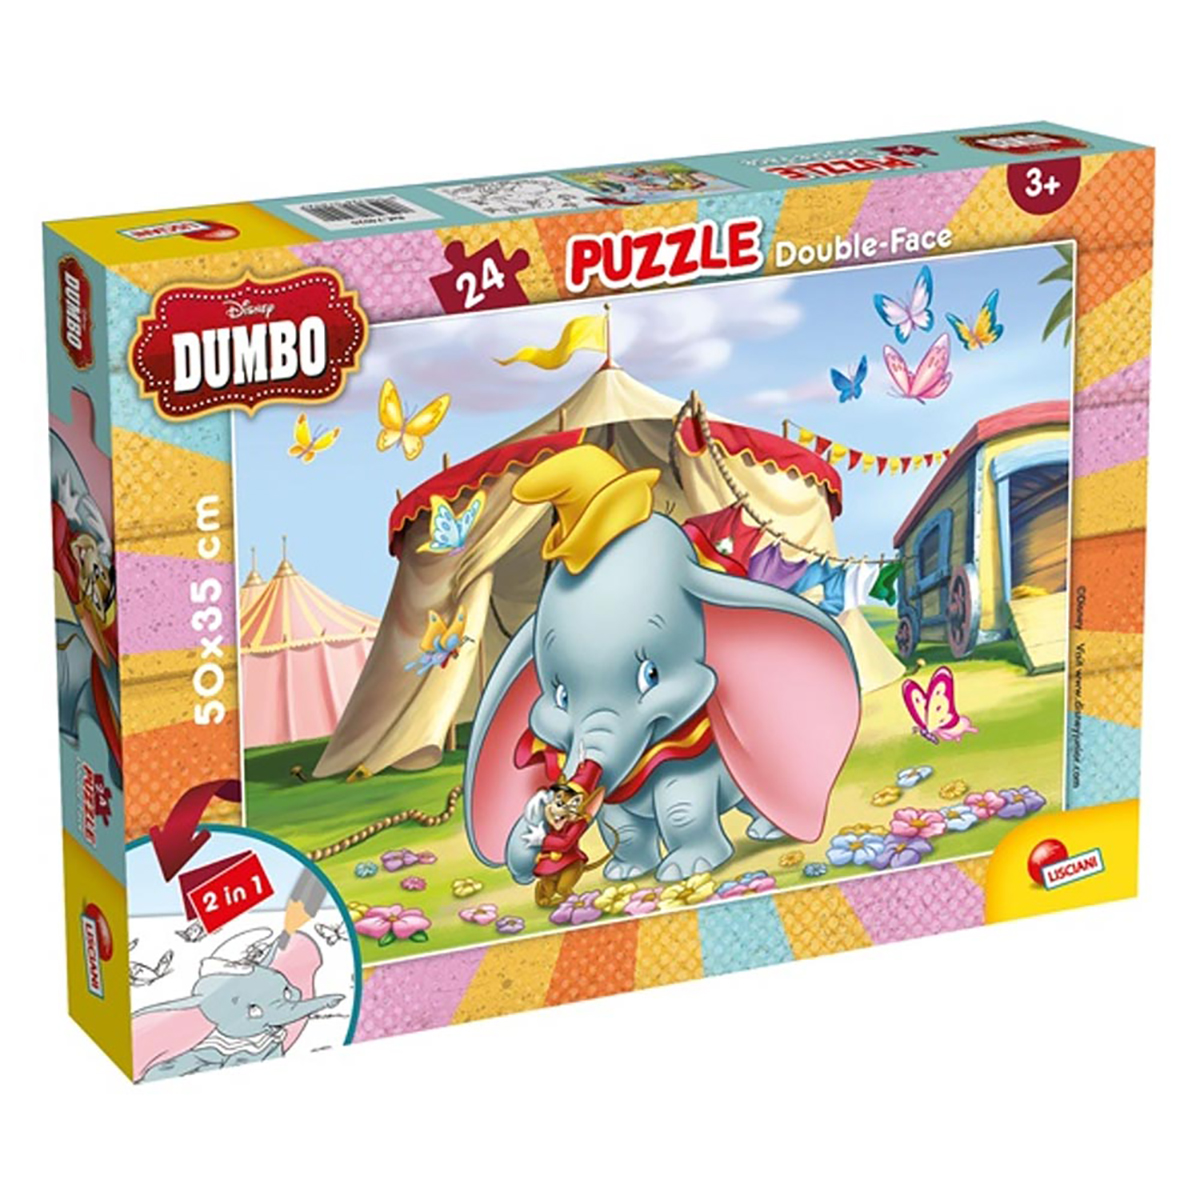 NOON Ausmal-Puzzle (50x35cm) von Lisciani Teile, Disney Puzzle 24 Dumbo